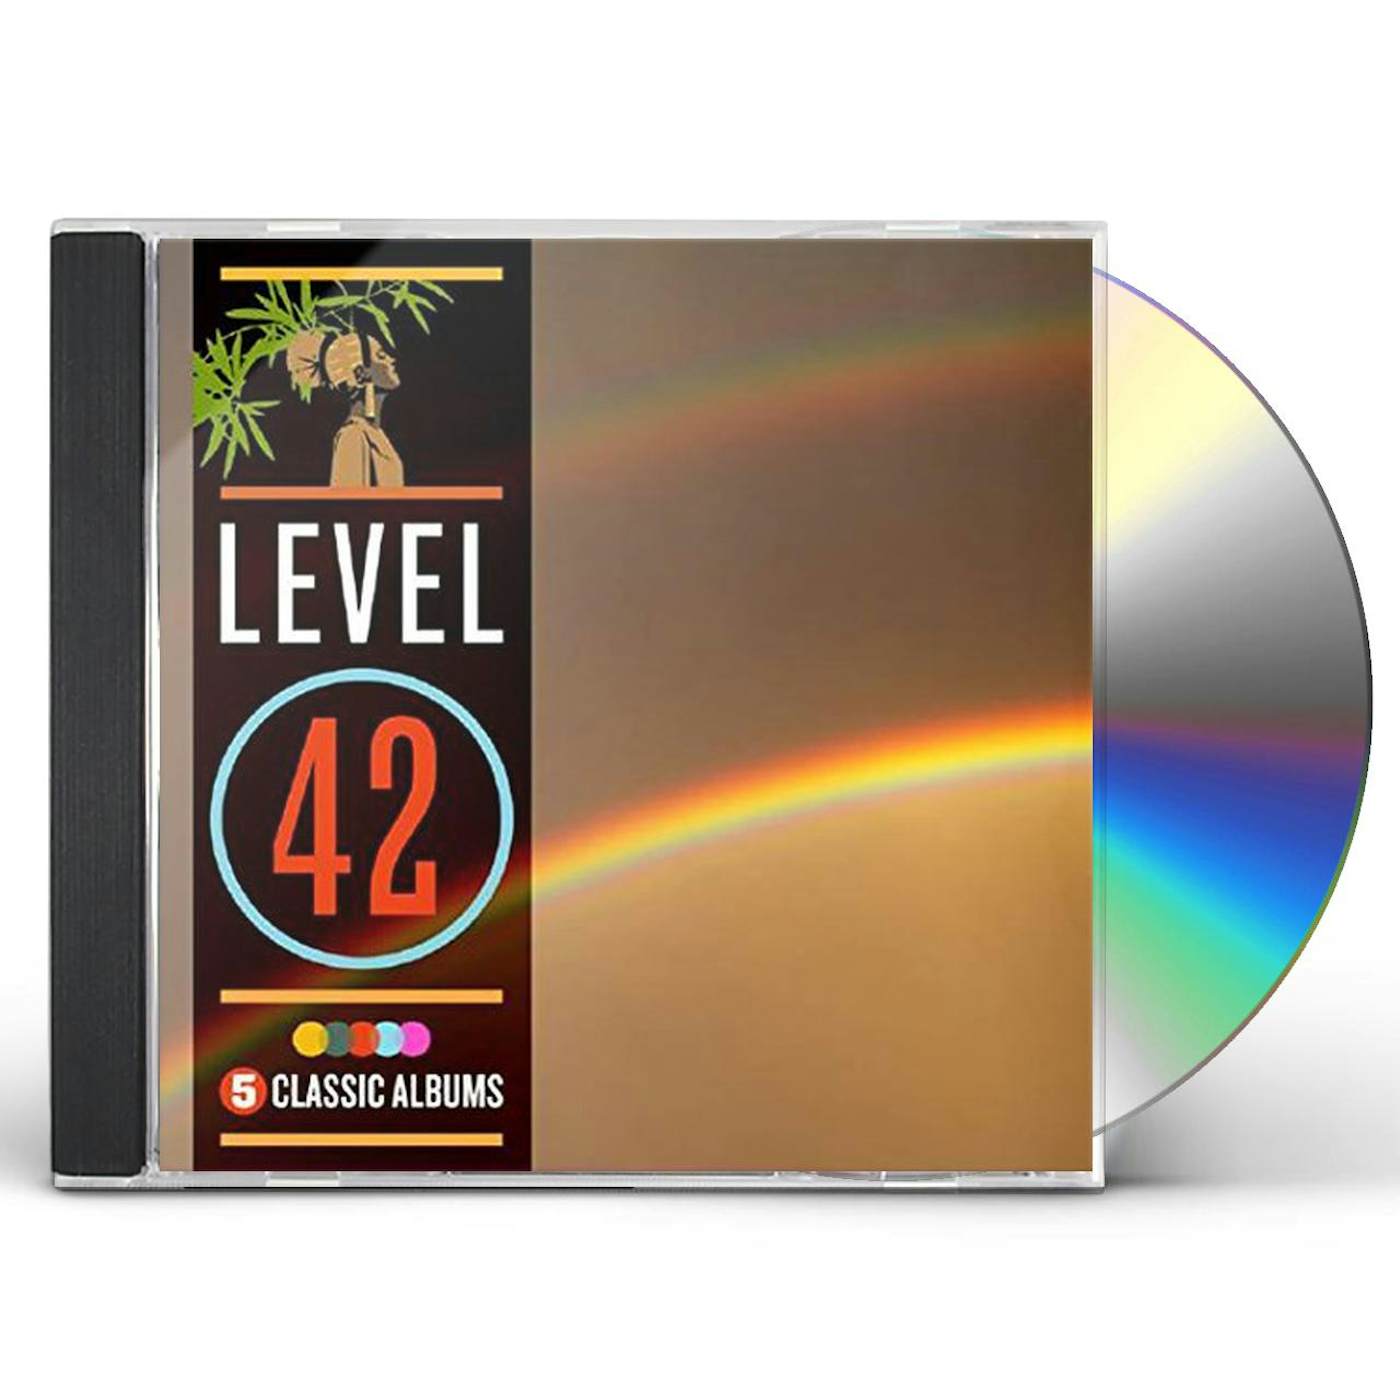 Level 42 5 CLASSIC ALBUMS CD